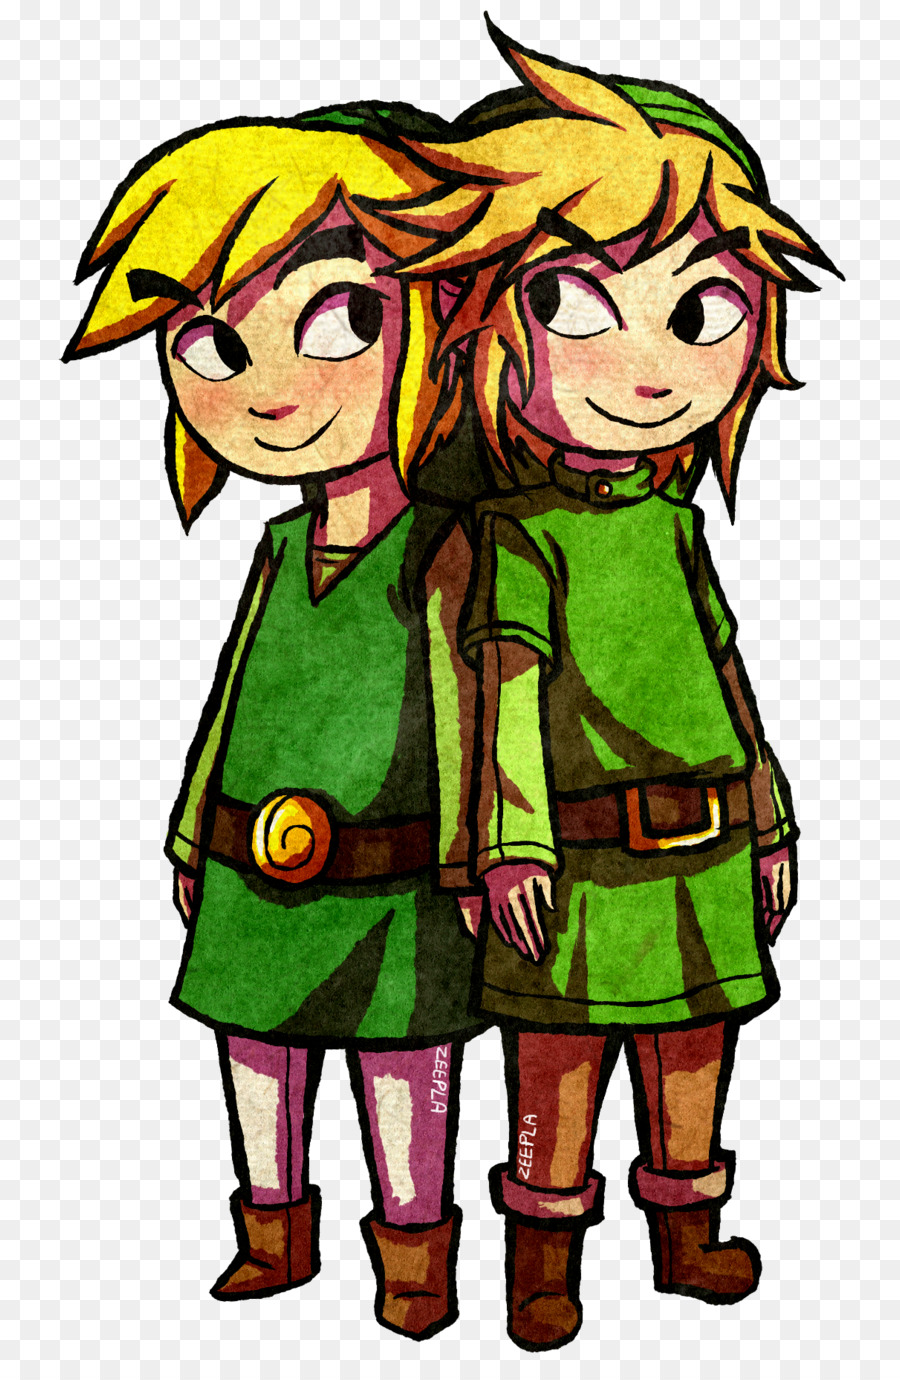 The Legend of Zelda: The Wind Waker Zelda II: The Adventure of Link-Fan-fiction - Die Legende von Zelda